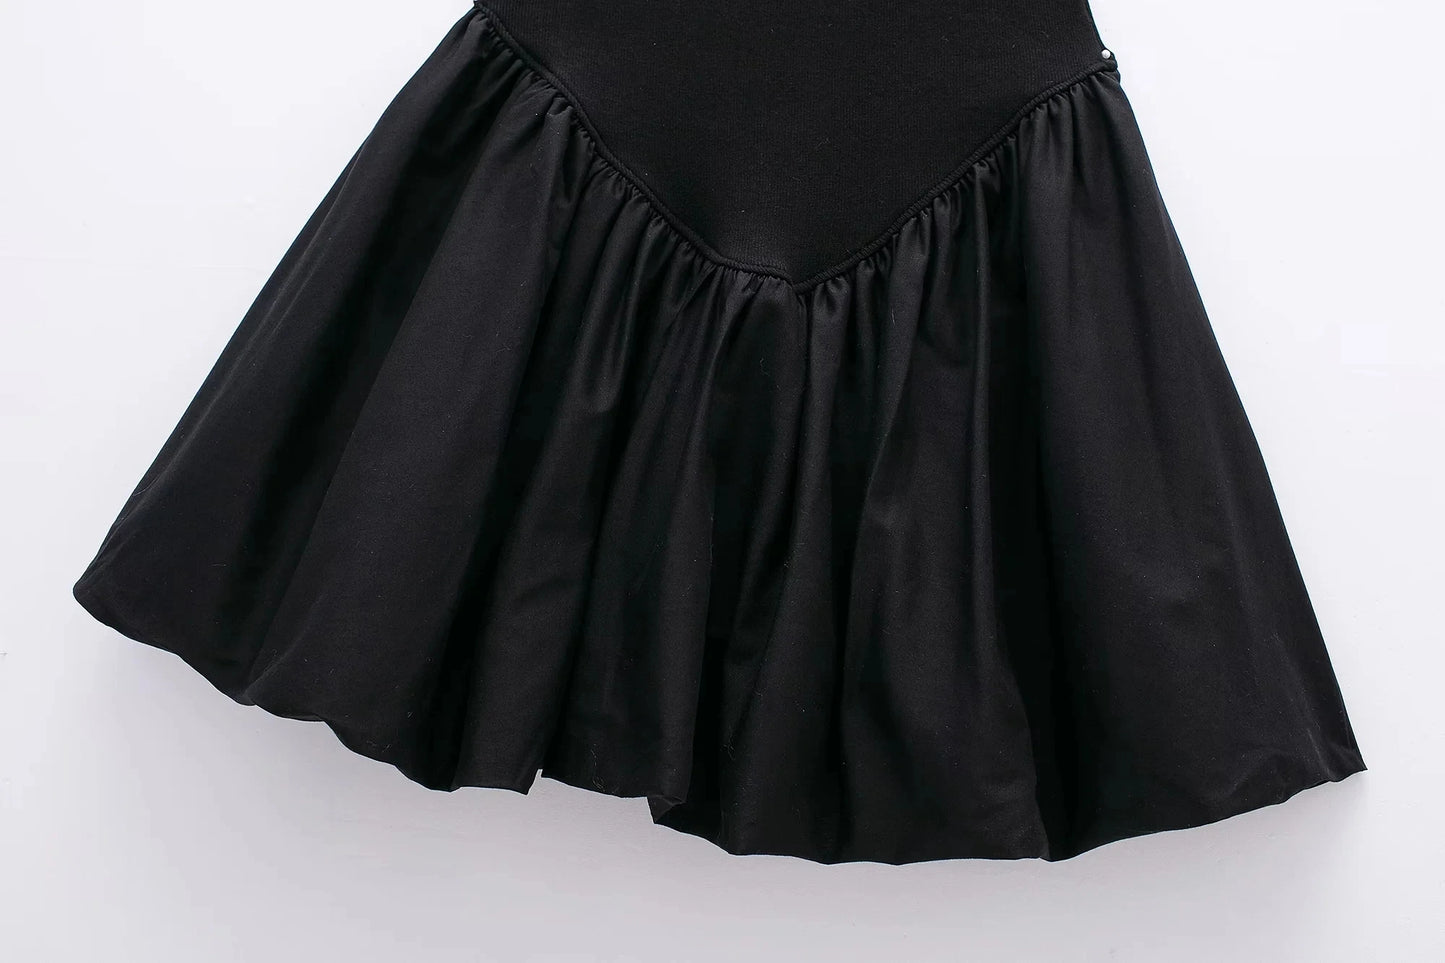 Mini Dresses- Women's Fit & Flare Little Black Dress for Summer- - Chuzko Women Clothing